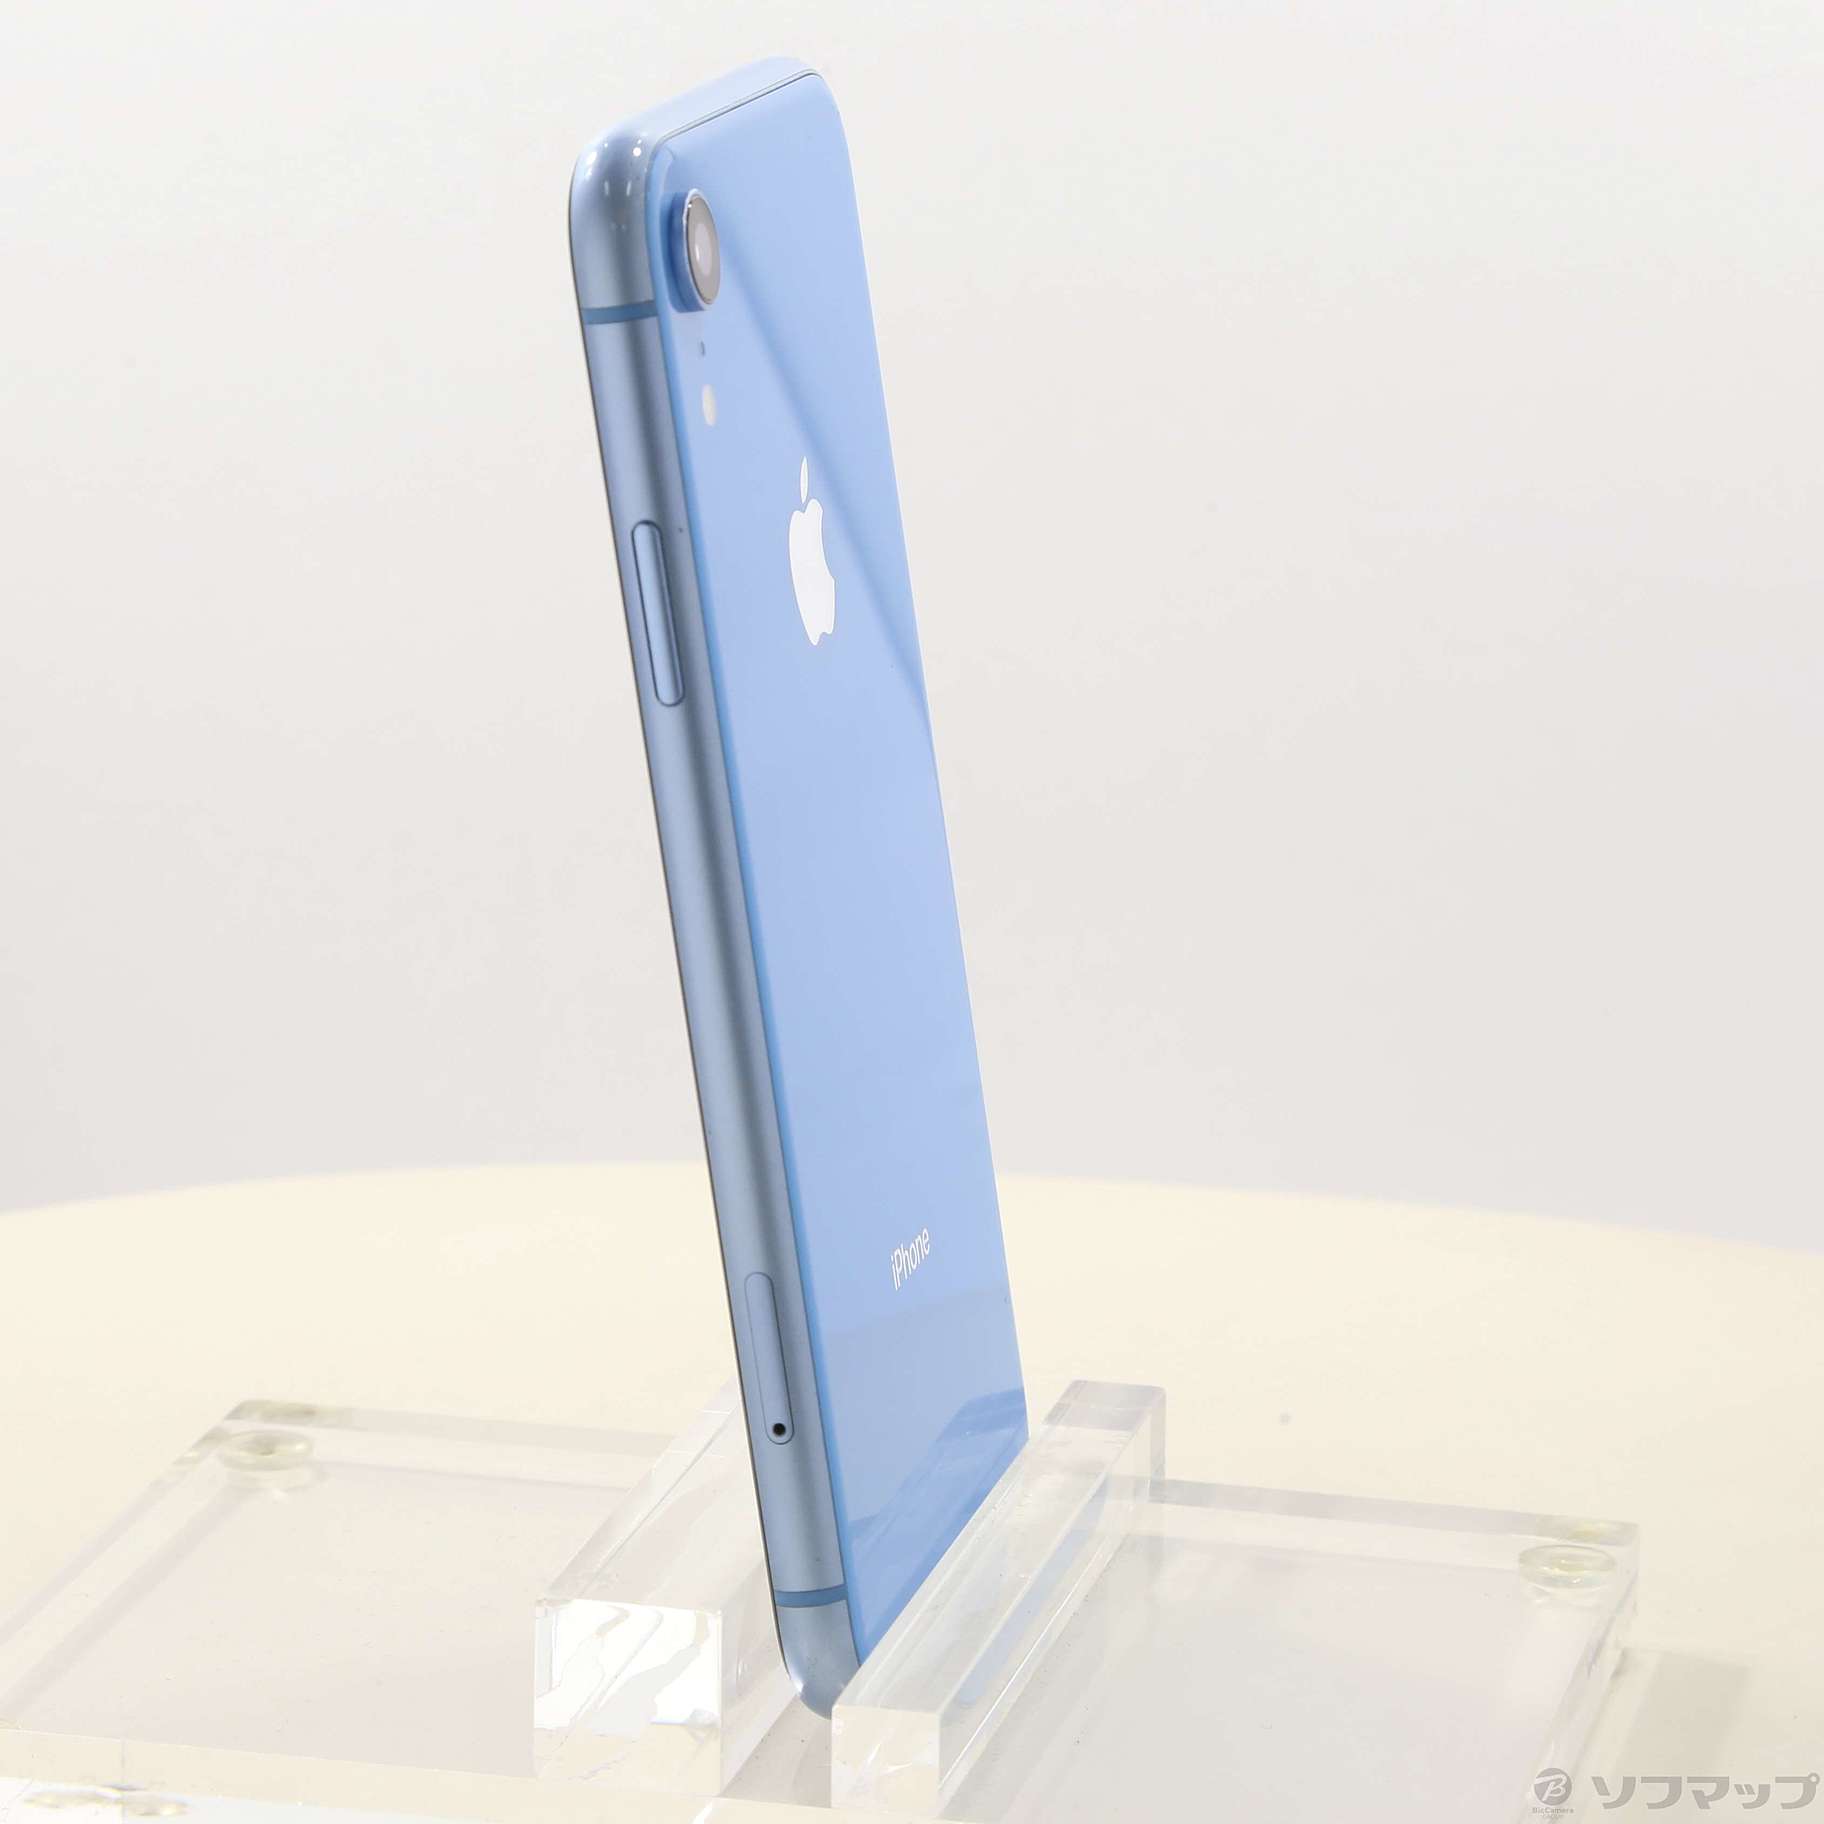 Apple iPhoneXR 64GB ブルー A2106 MT0E2J/A - スマートフォン本体